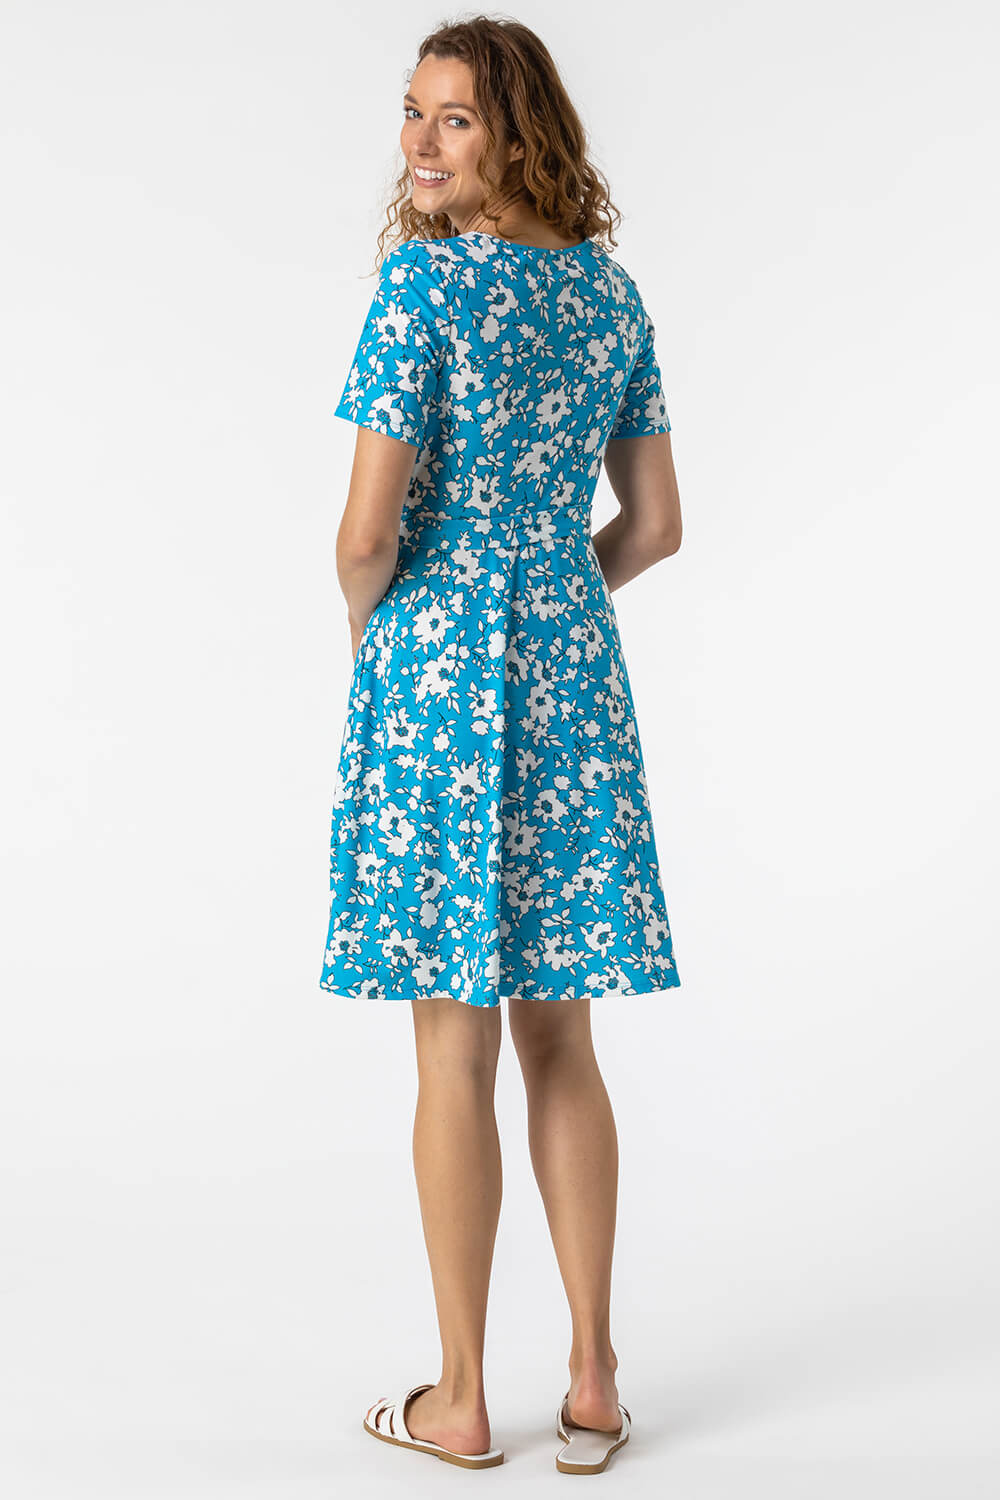 Floral Print Belted Skater Dress in Blue - Roman Originals UK